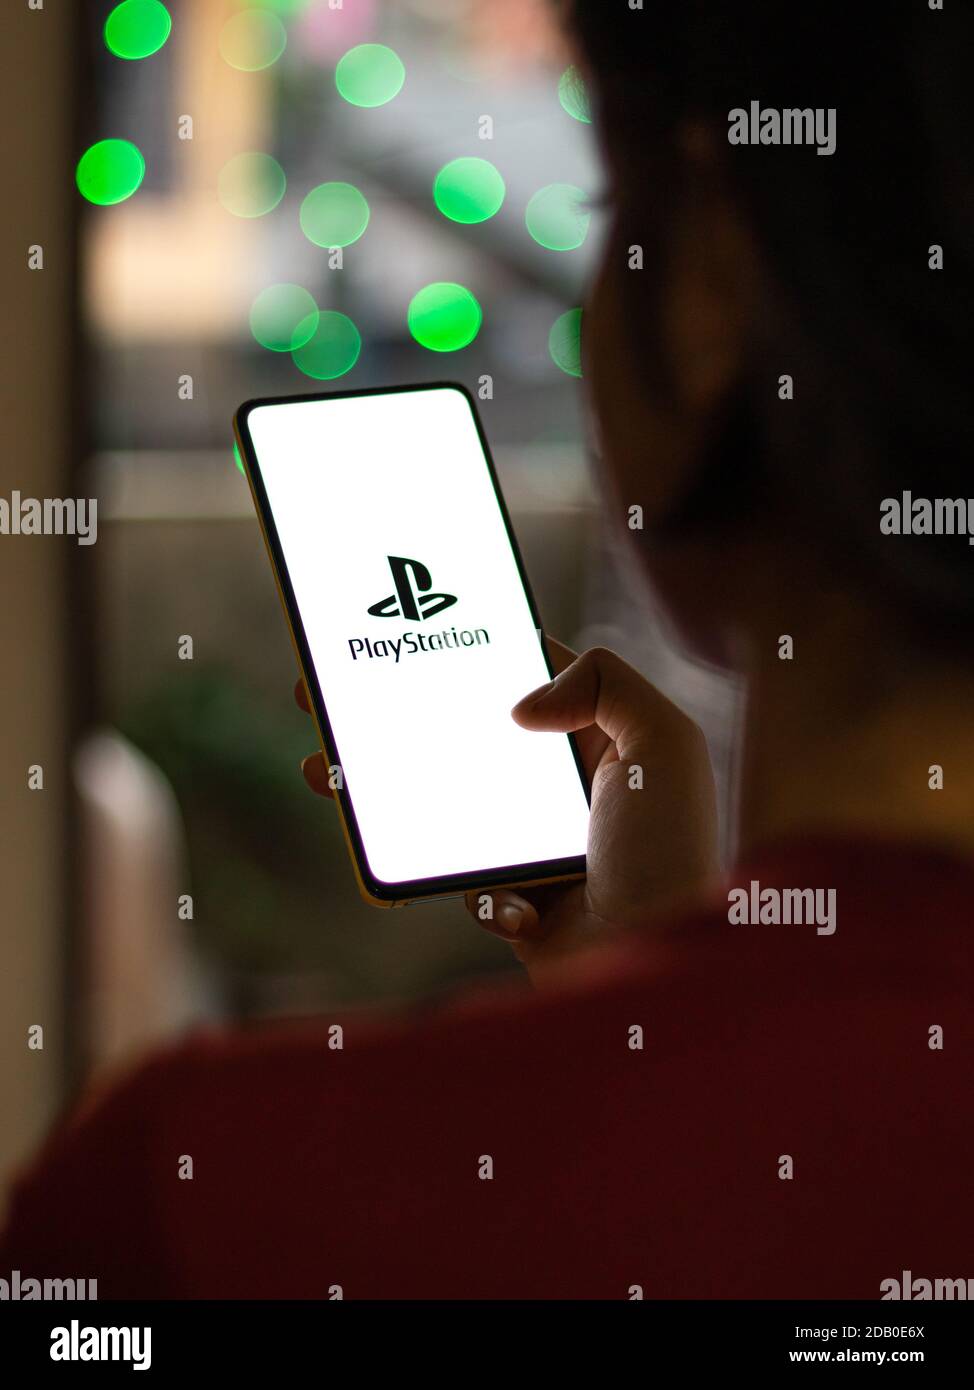 Assam, inde - 15 novembre 2020 : logo Play station 5 sur image de stock d'écran de téléphone. Banque D'Images